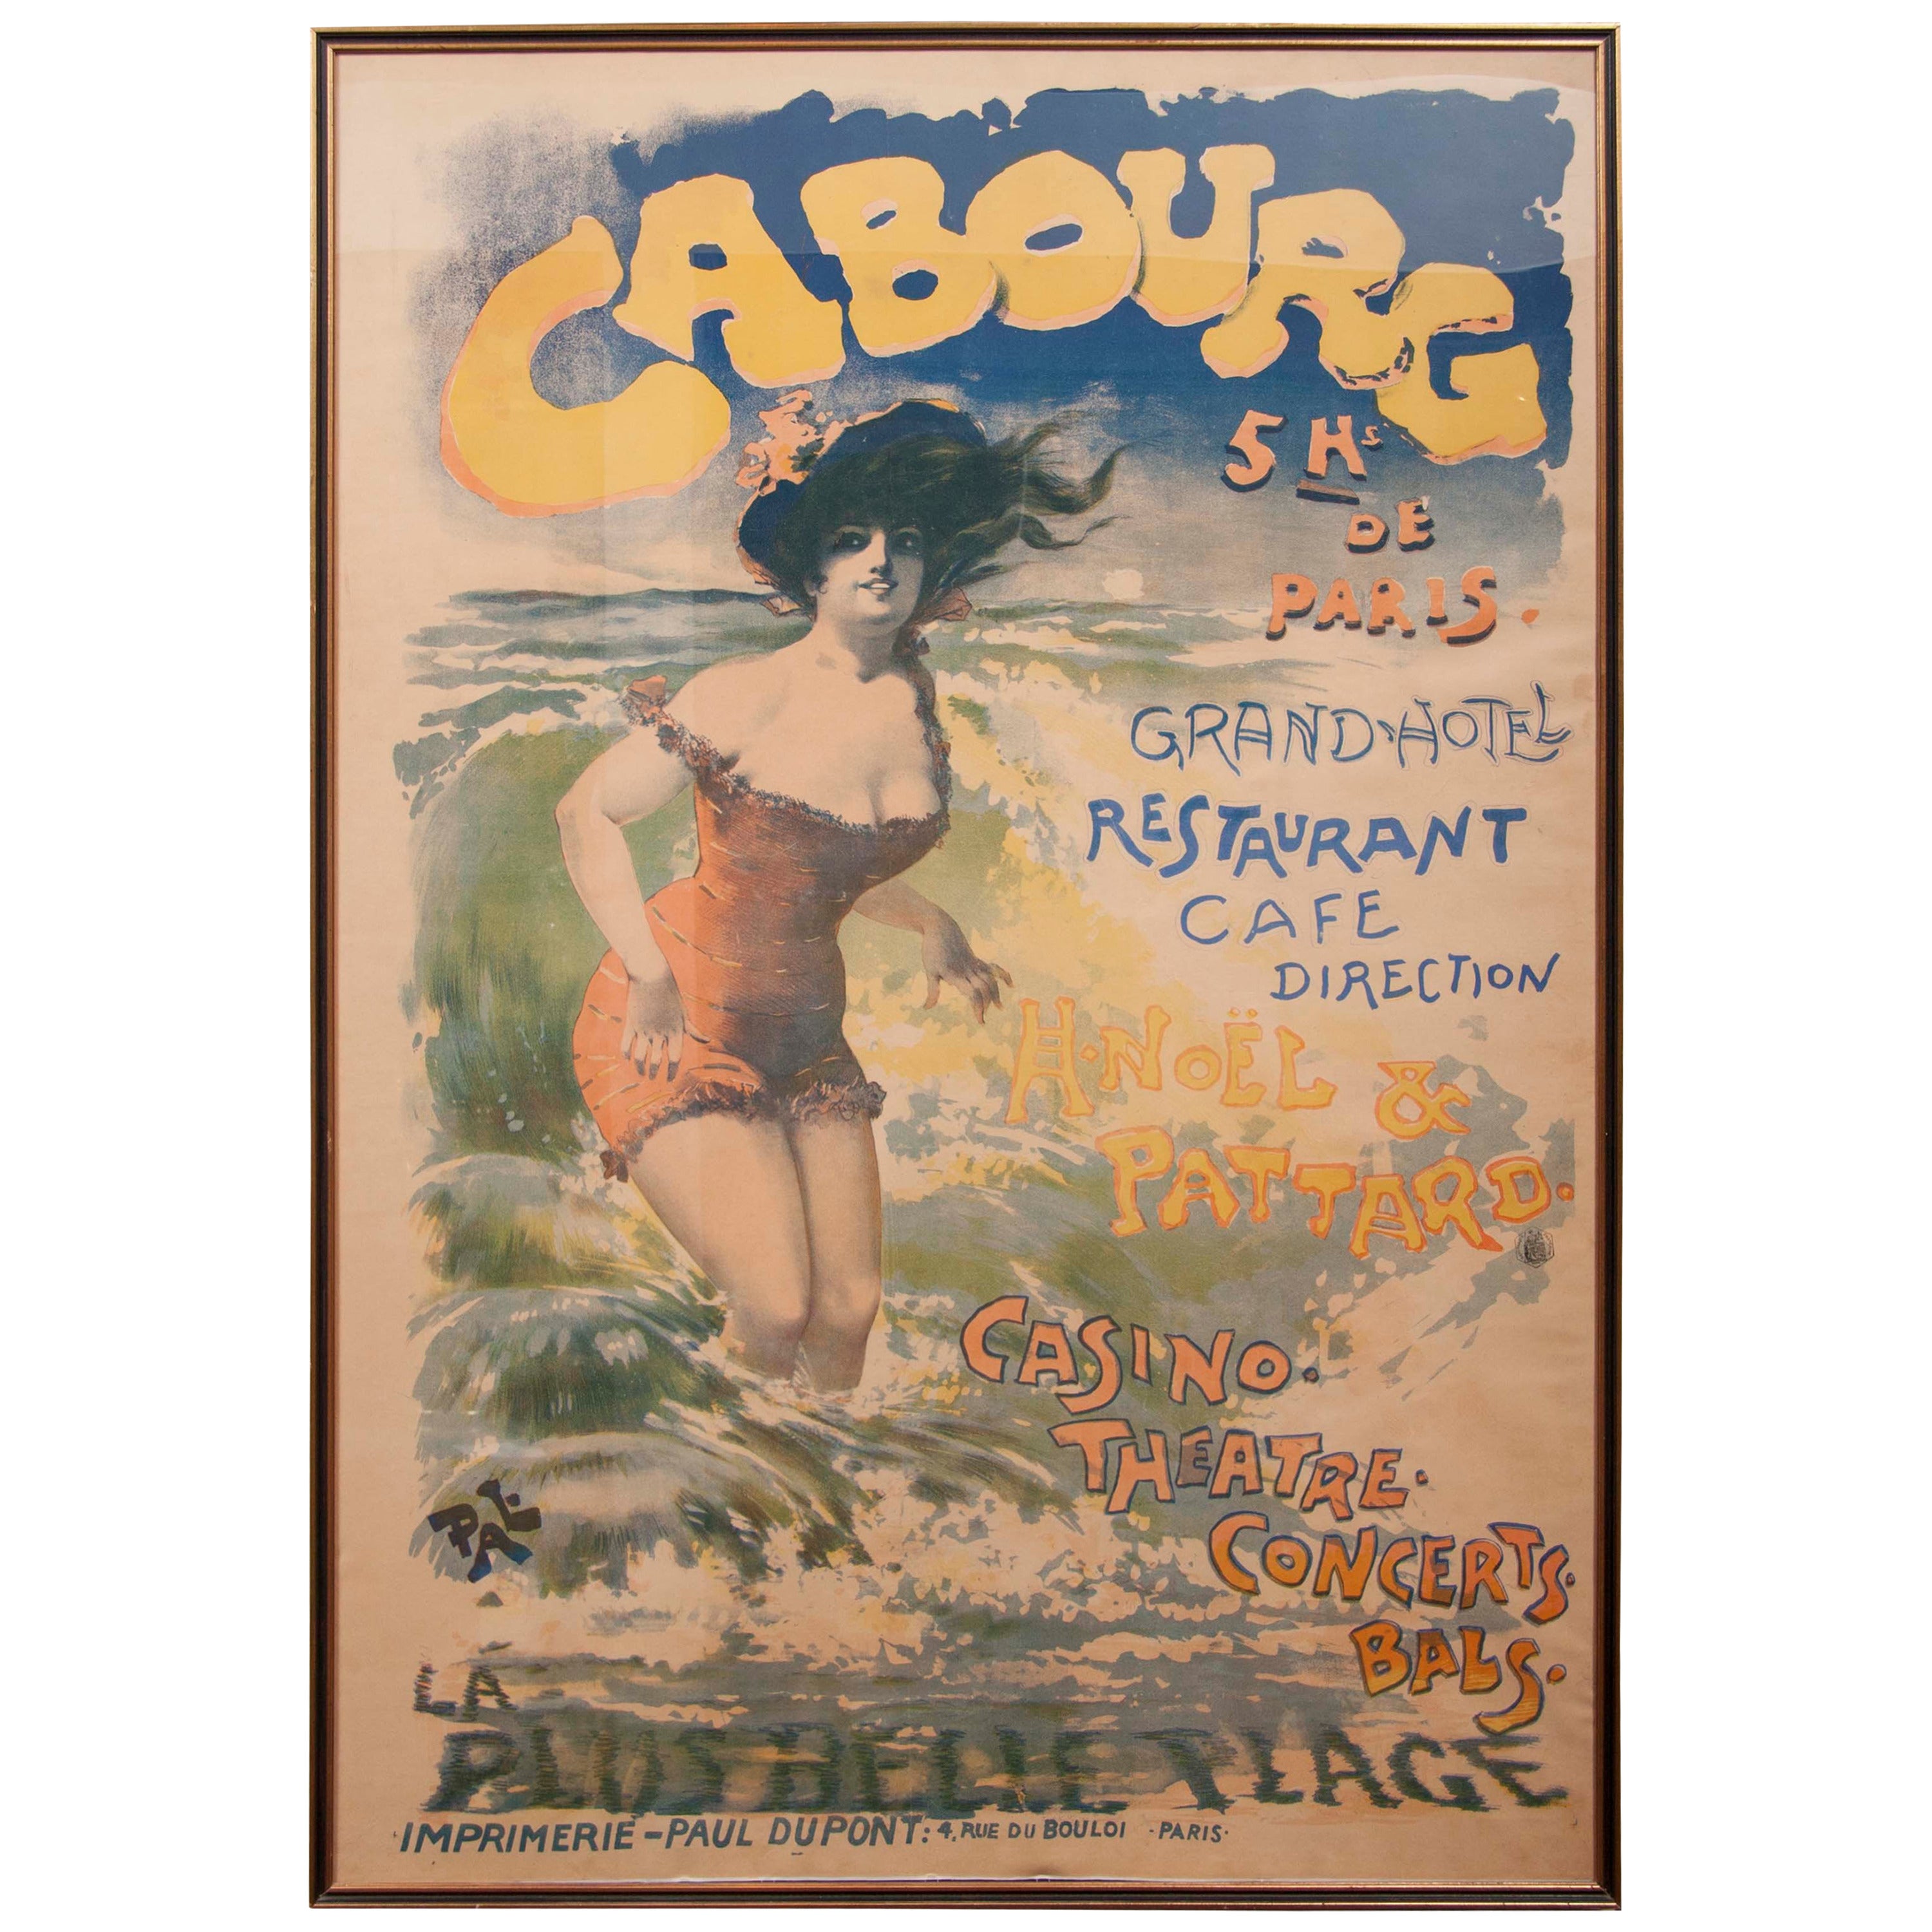 Cabourg, affiche de l'artiste roumain Pal, Jean de Paleologue